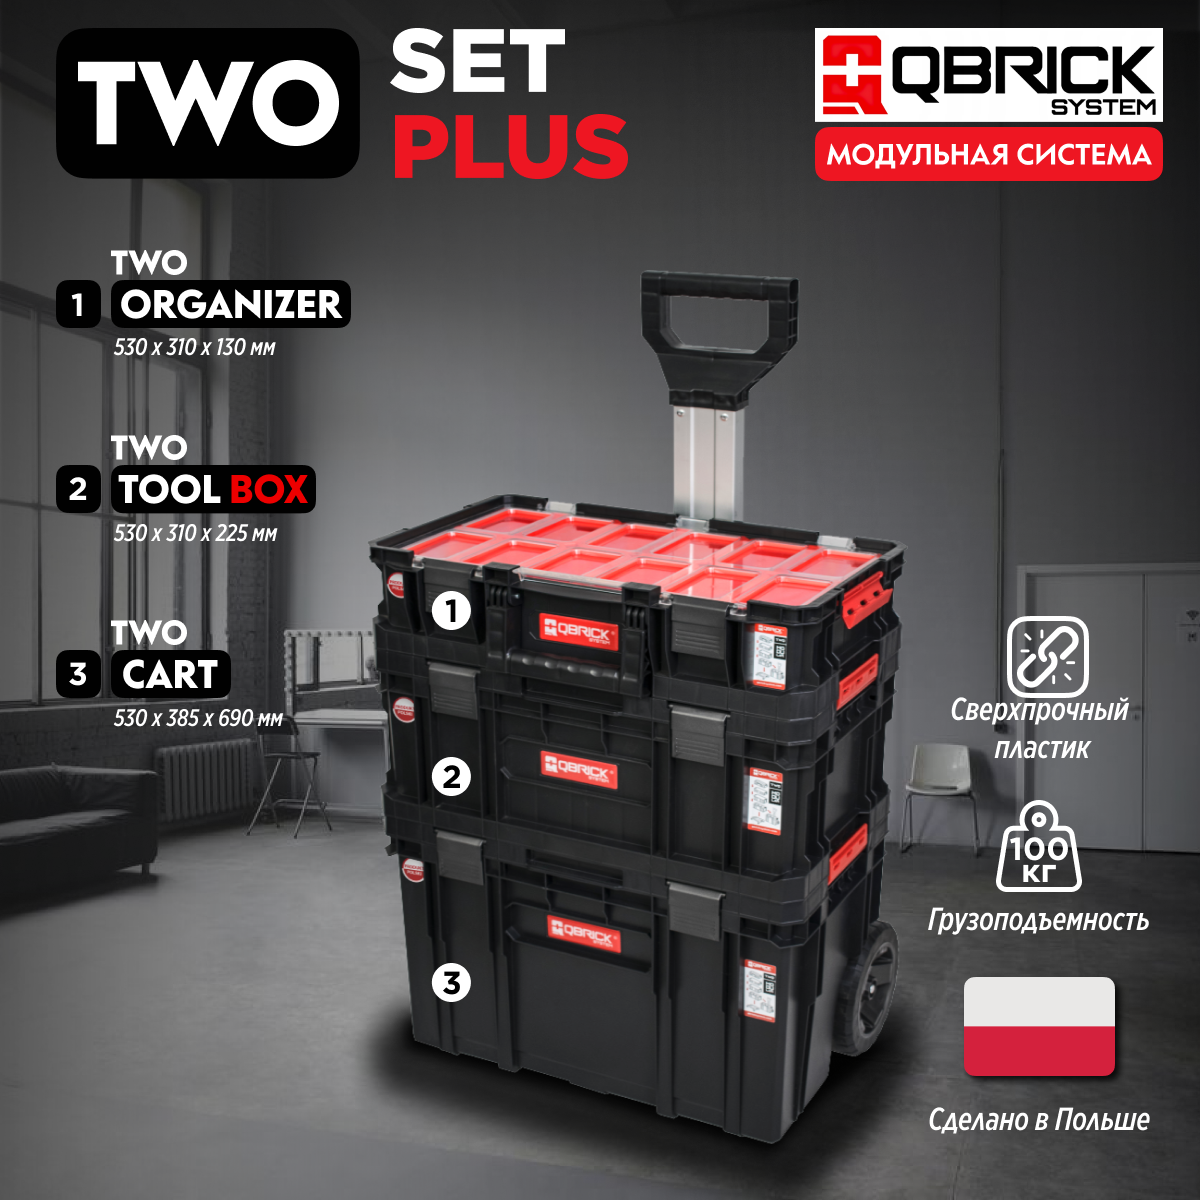 Набор ящиков для инструментов Qbrick System TWO Set Plus 1-Z251248PG001 морозостойкая крышка для ящиков тара ру